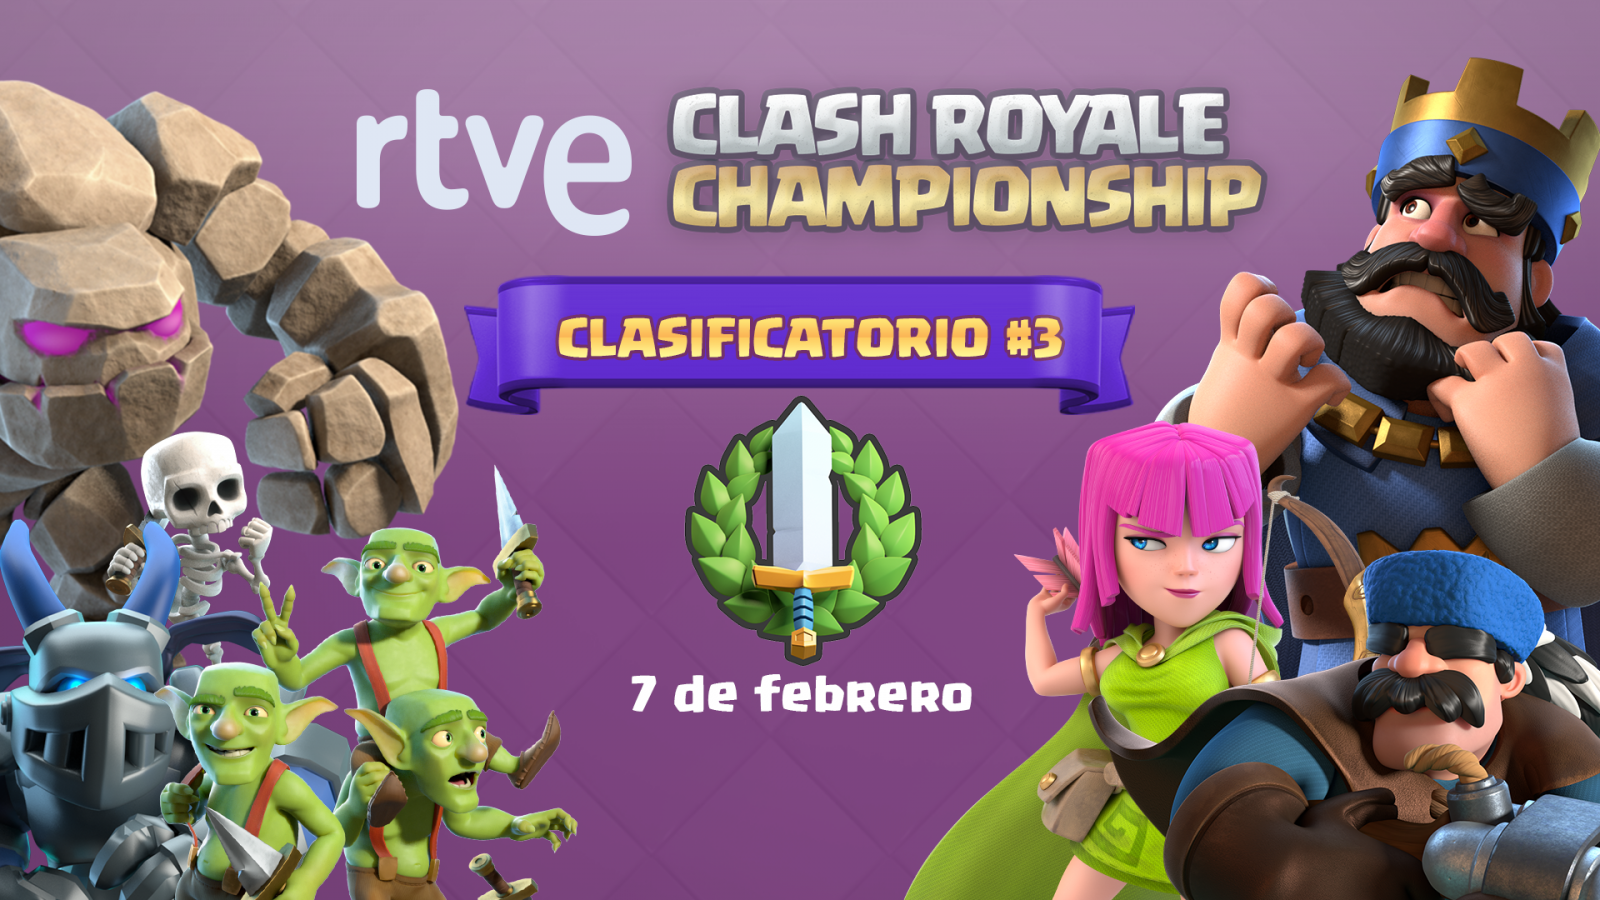 RTVE Clash Royale Championship celebra su tercer clasificatorio